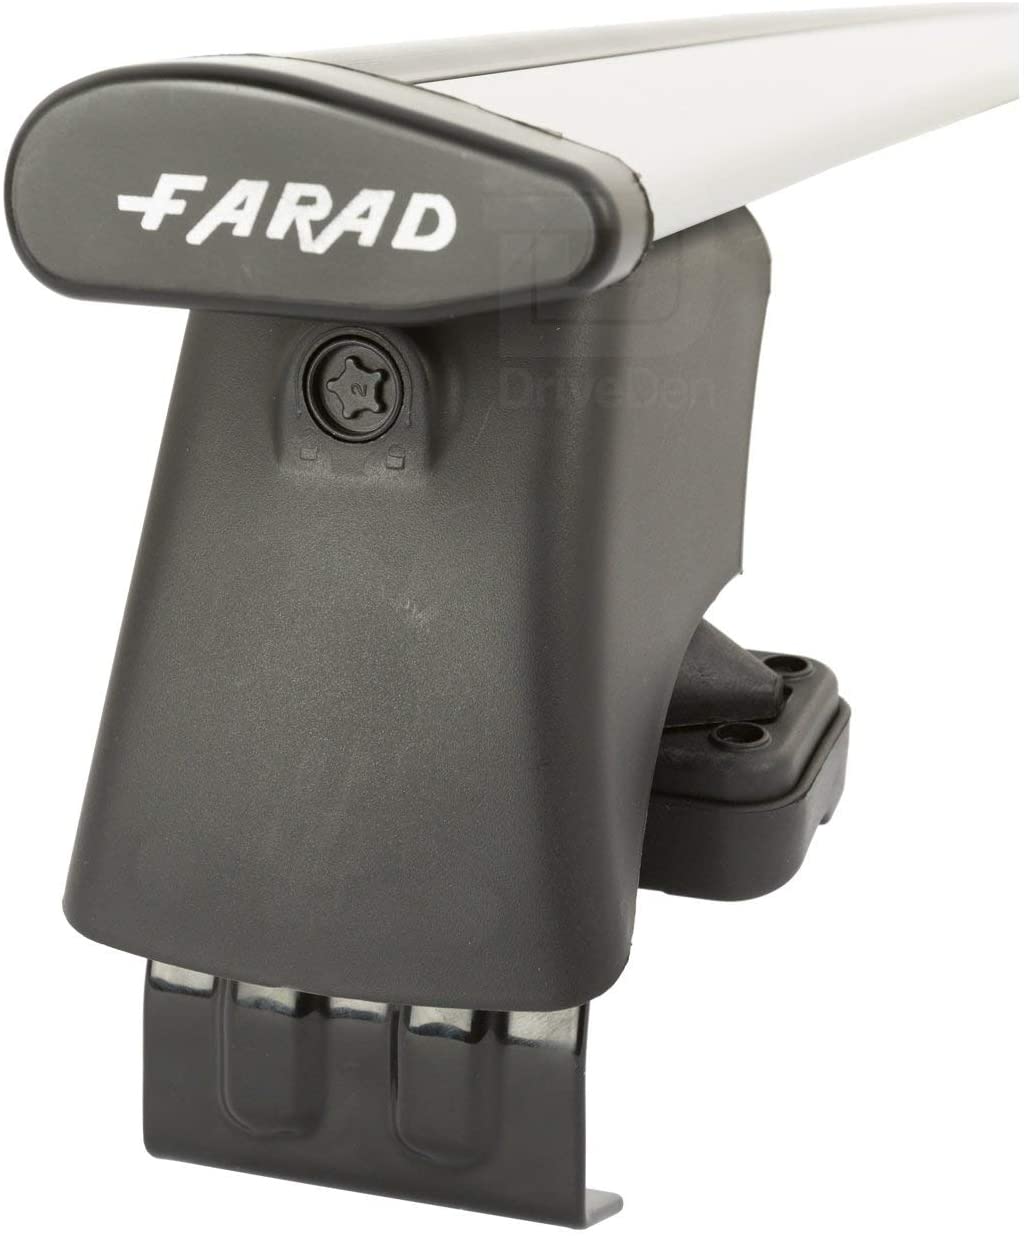 FARAD-Kit H2 per barre portatutto - Bmw X6 - E71 2008-2014 (senza corrimano)